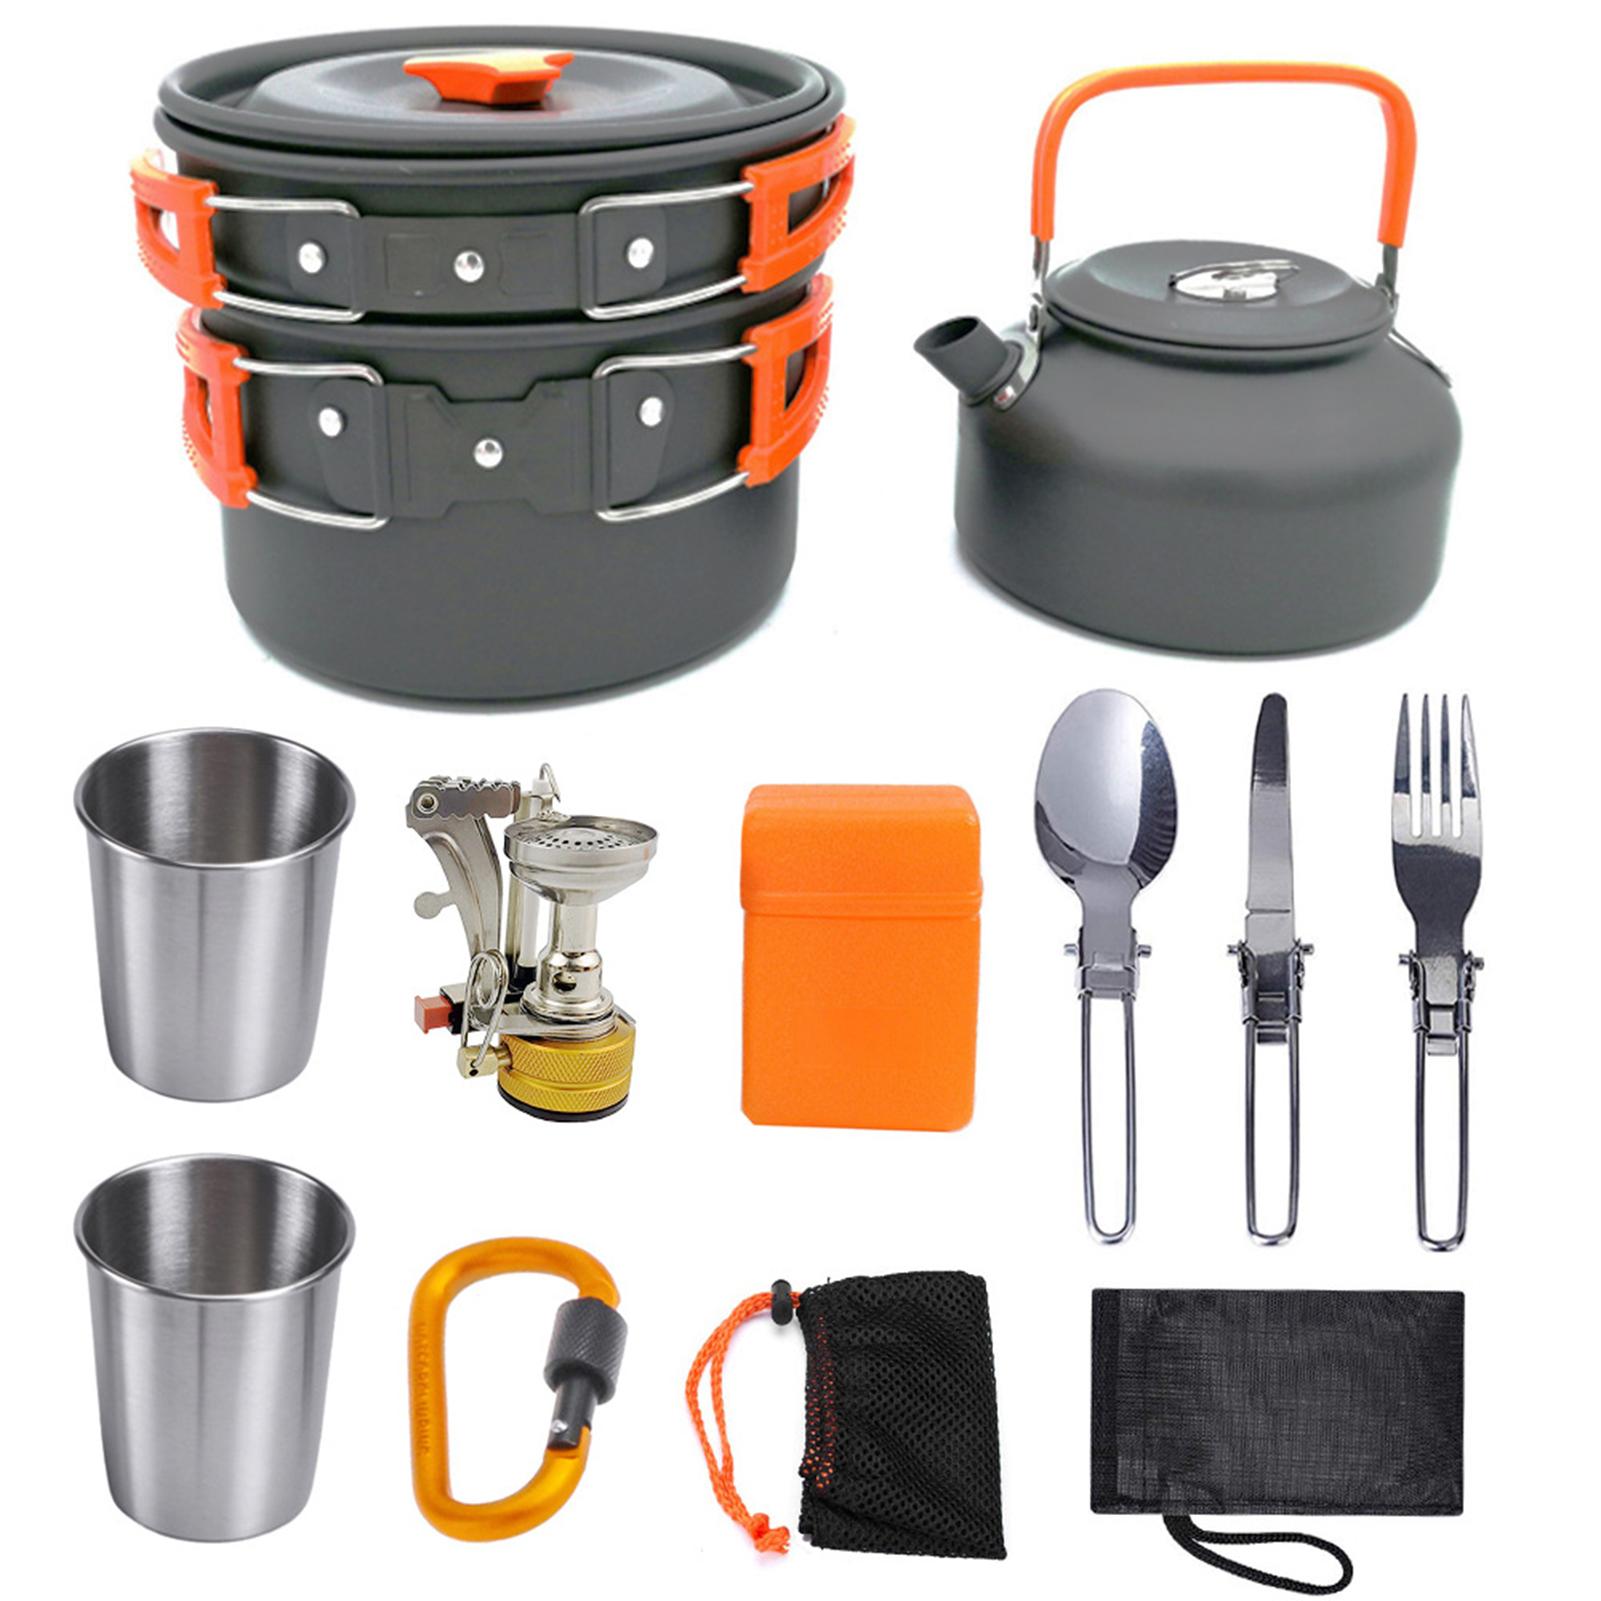 Bộ dụng cụ nấu ăn cắm trại bao gồm chảo, ấm trà, bếp và dao kéo.. Có thể gấp gon với túi đựng tiện lợi